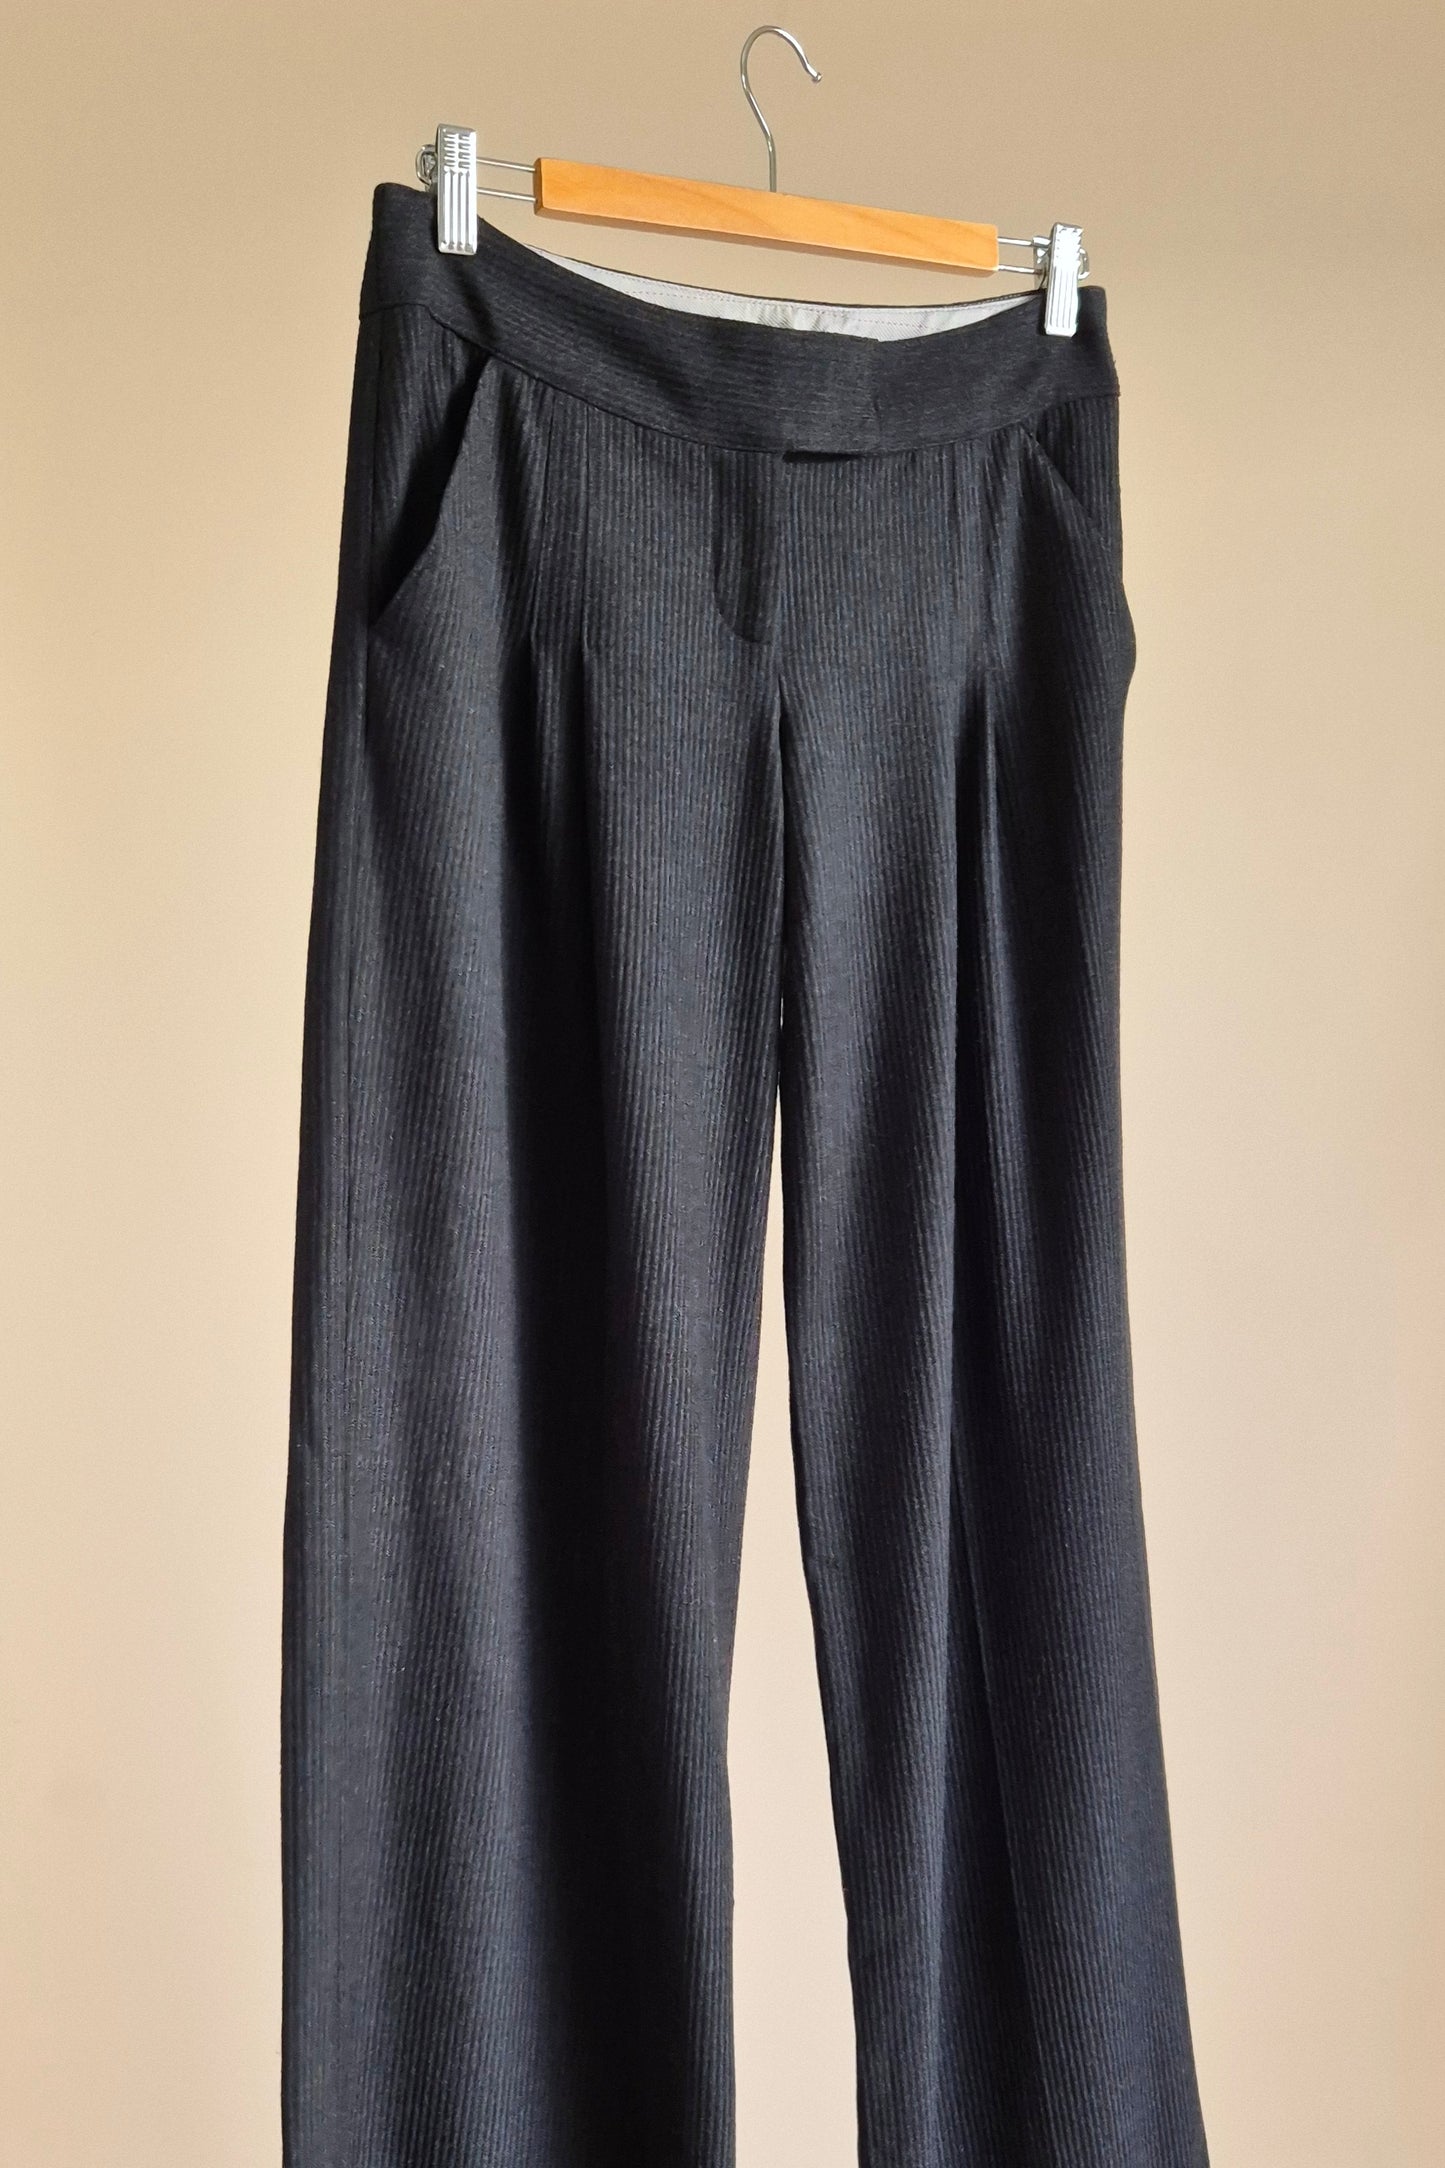 Stunning Diane von Furstenberg wool pants Size XS